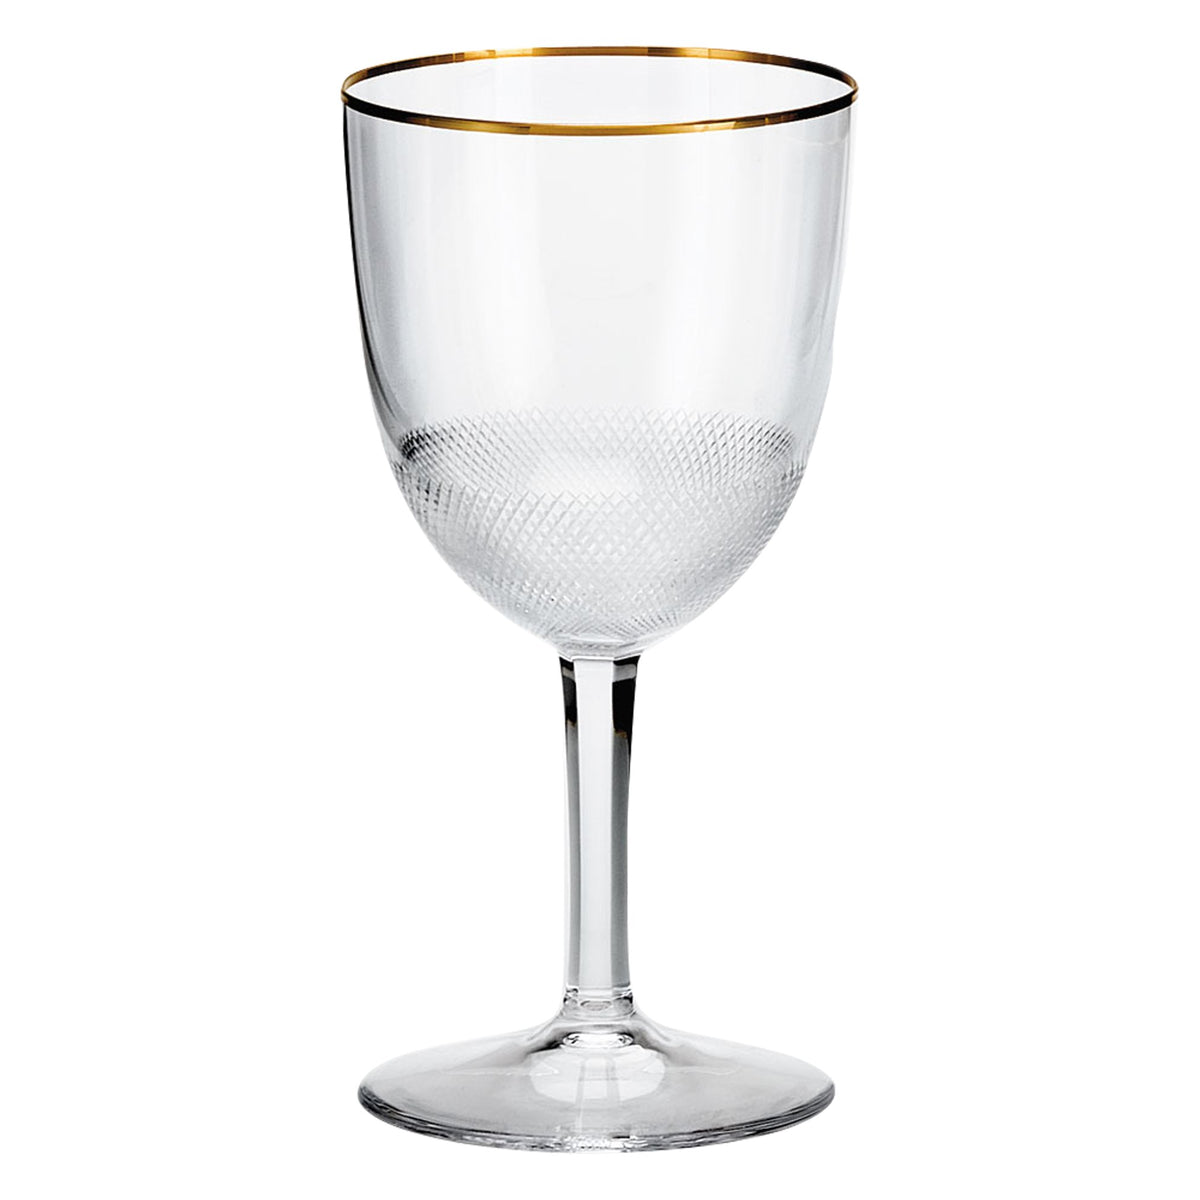 Royal Crystal Wine Glass 280ml / 9oz